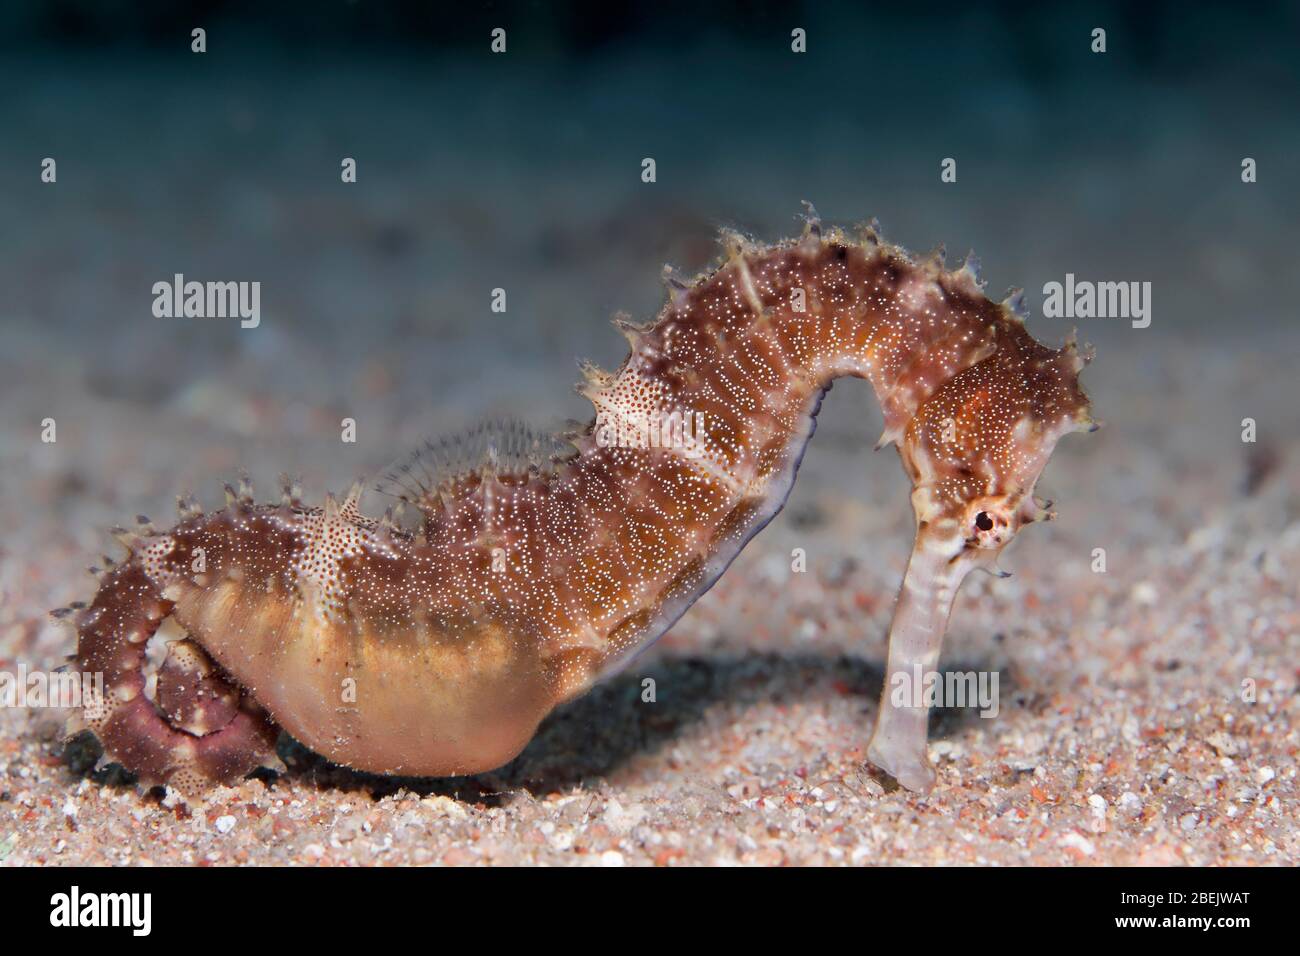 Cheval de mer à épines (Hippocampus histrix) sur une terre sablonneuse, marron, mer Rouge, Jordanie Banque D'Images